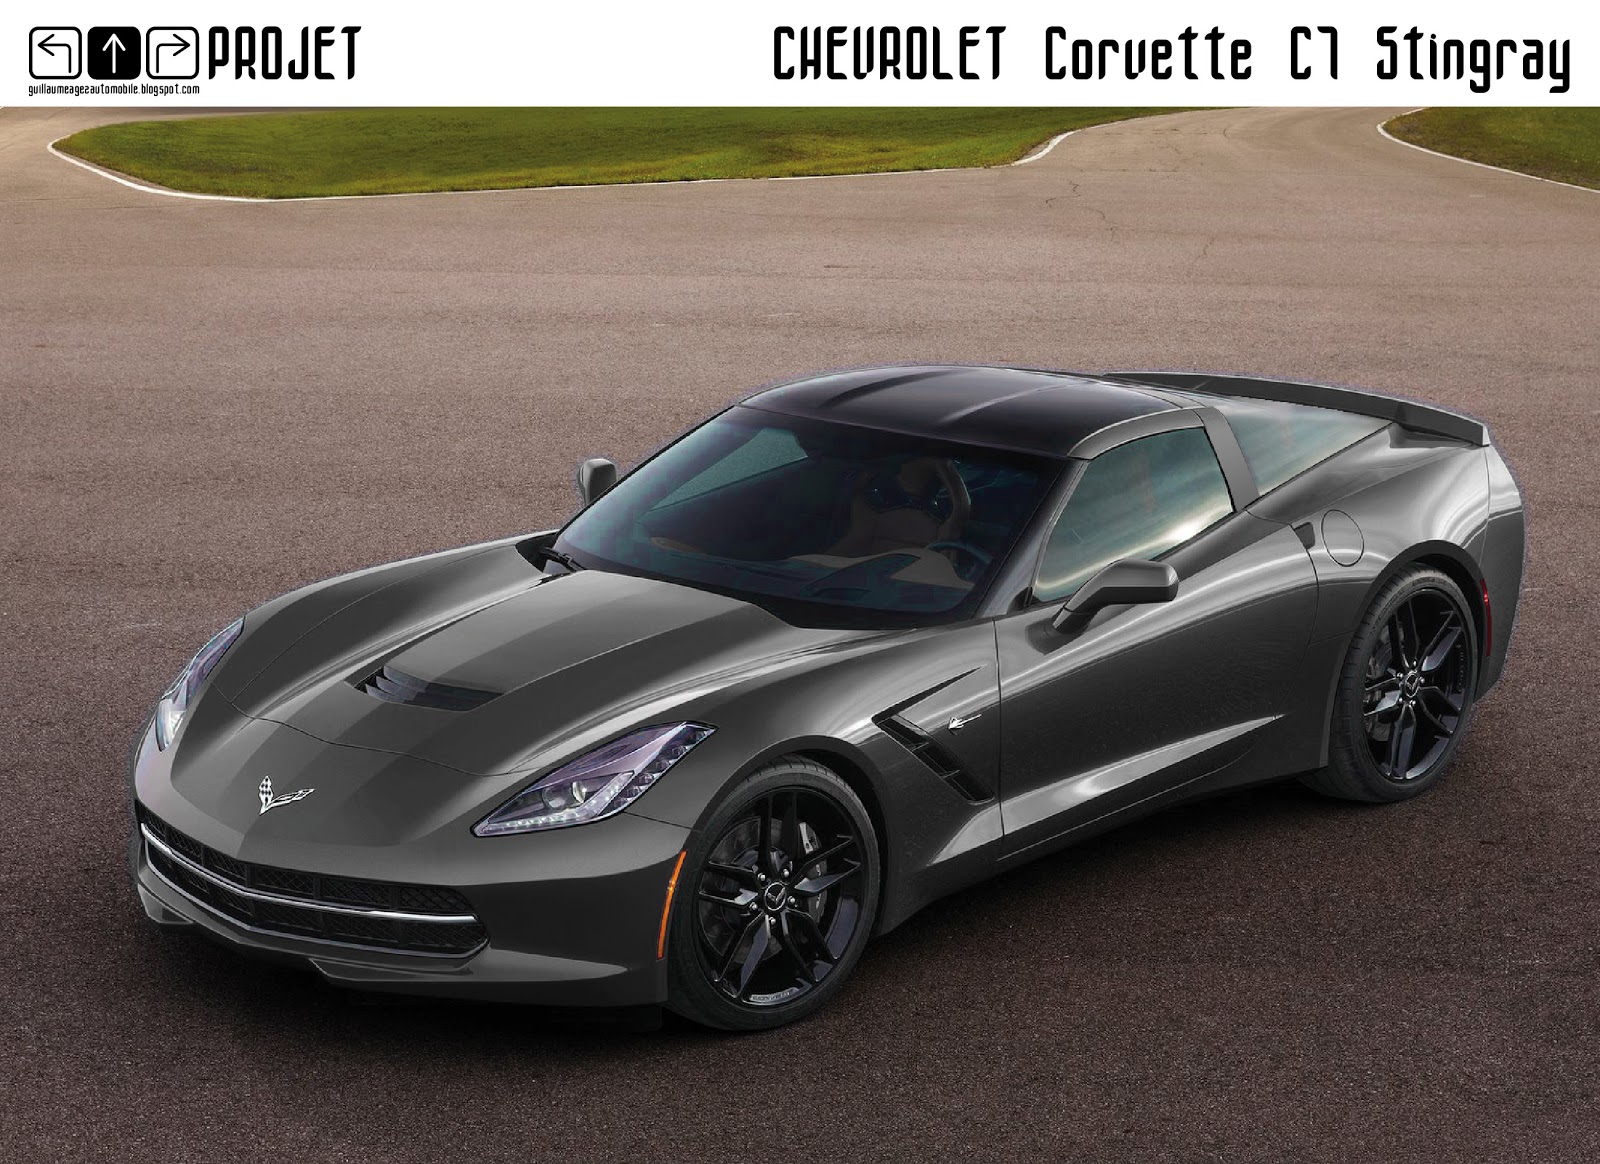 Chevrolet+Corvette+C7+Stingray+Face+Bull